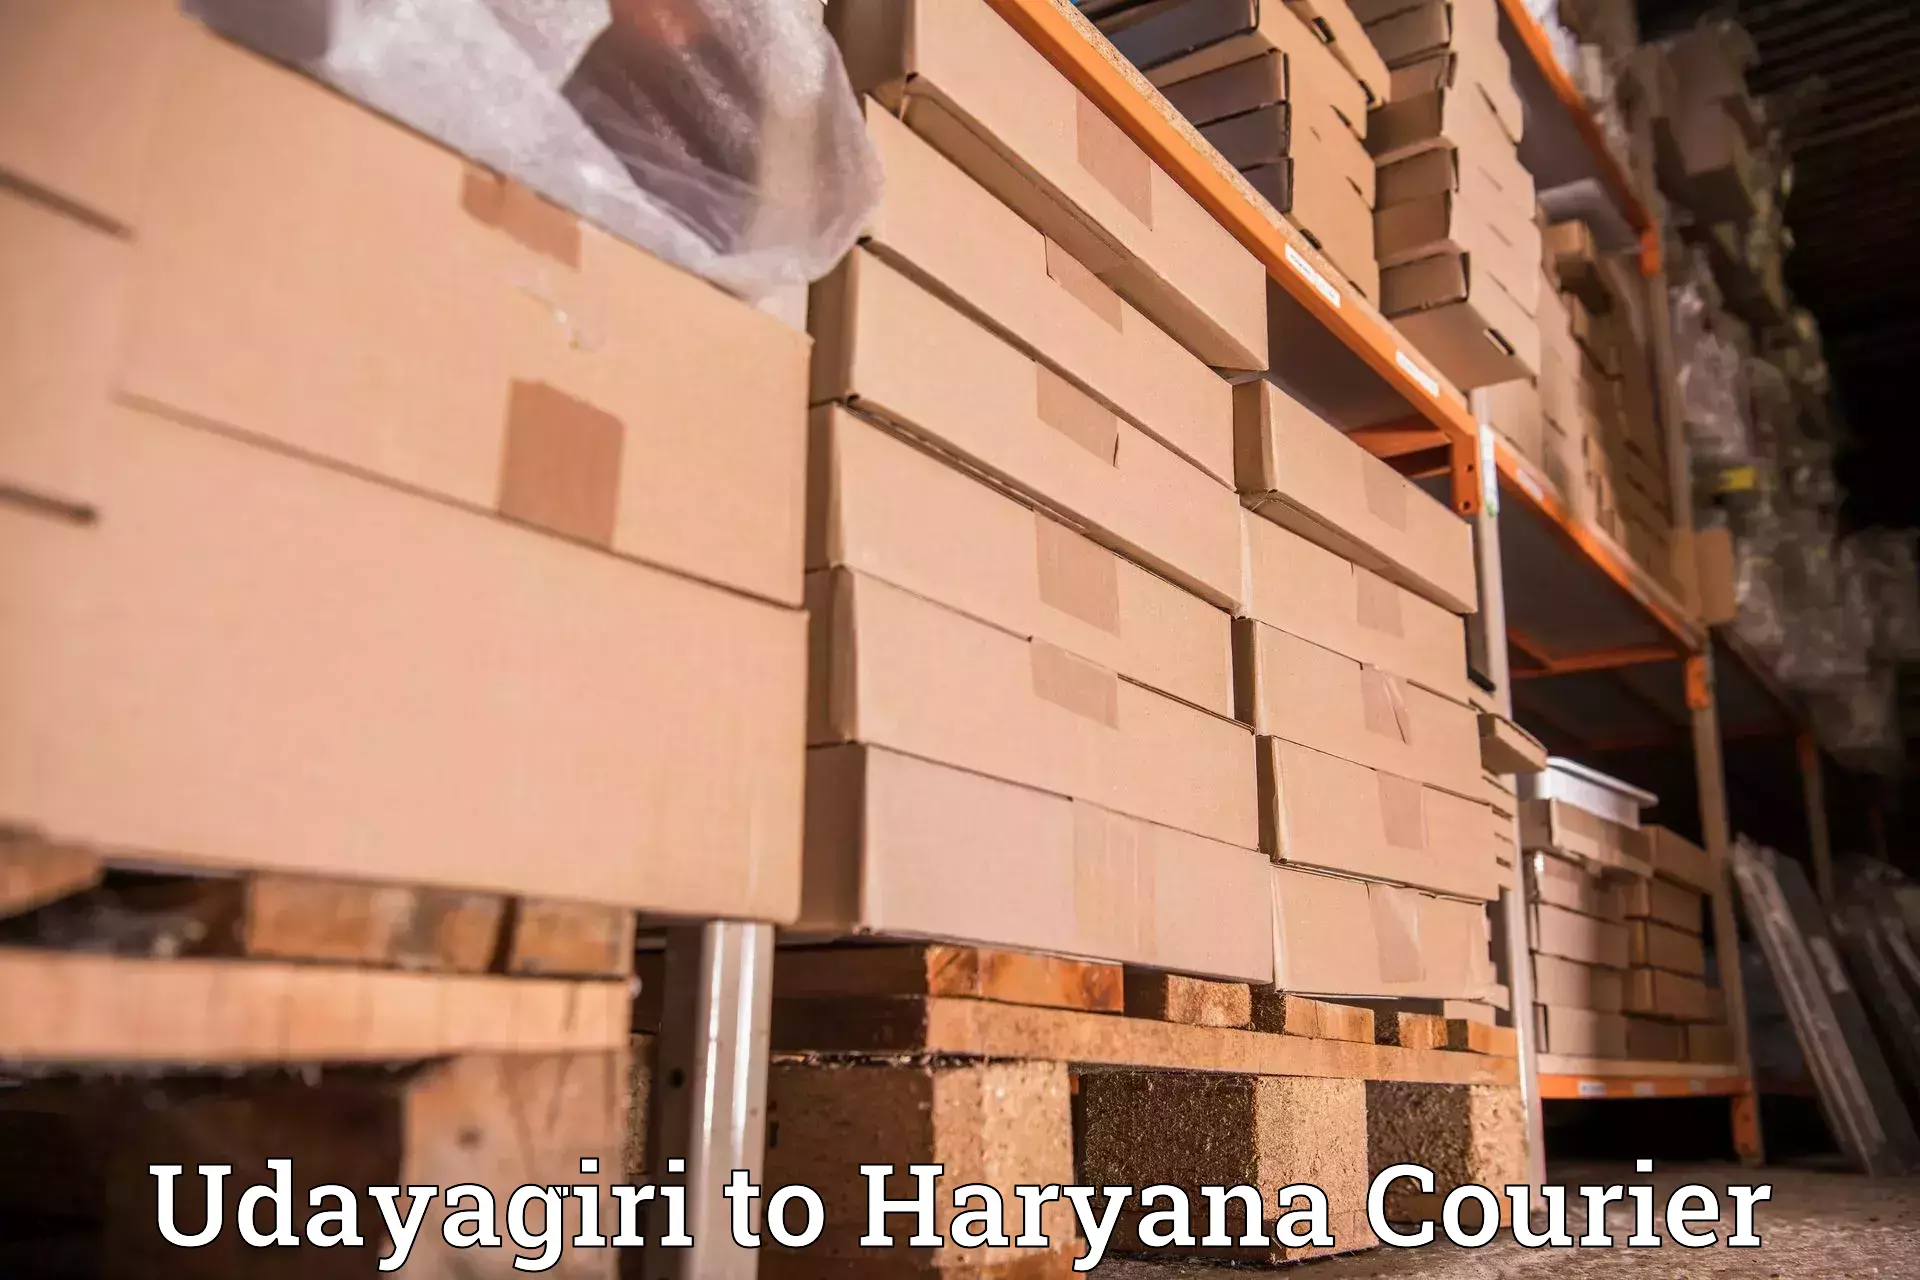 Courier service innovation Udayagiri to IIIT Sonepat